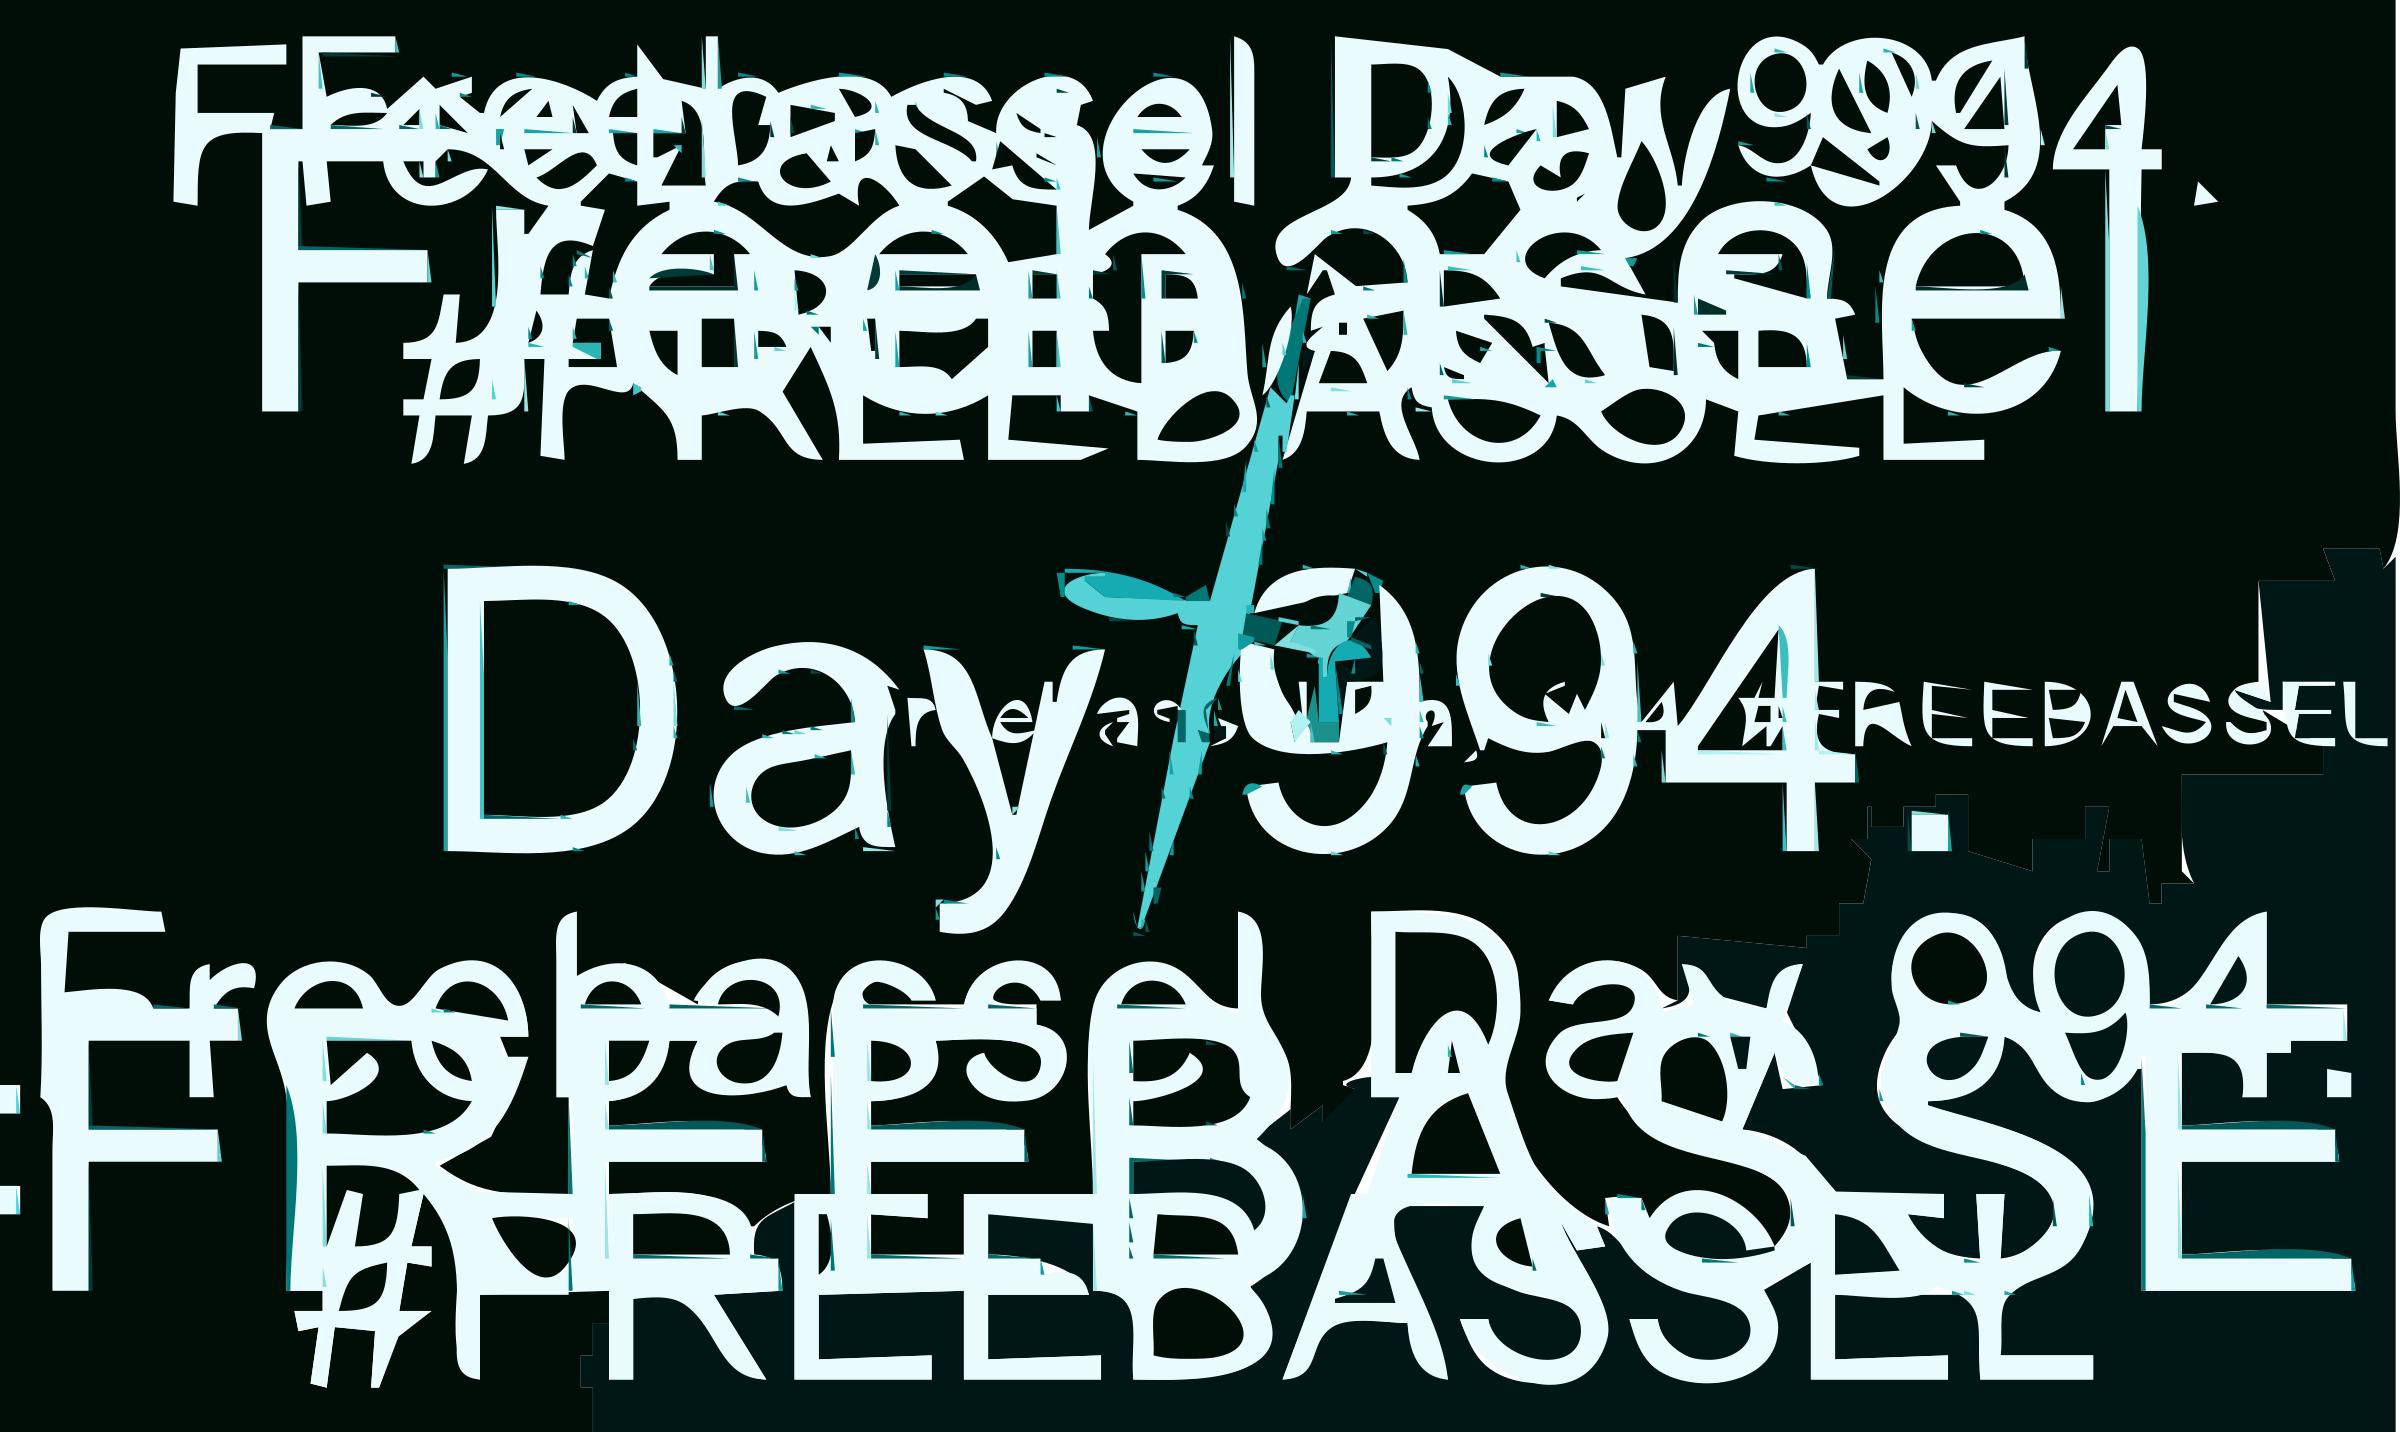 Freebassel Day 994 Drone Cyanotype png